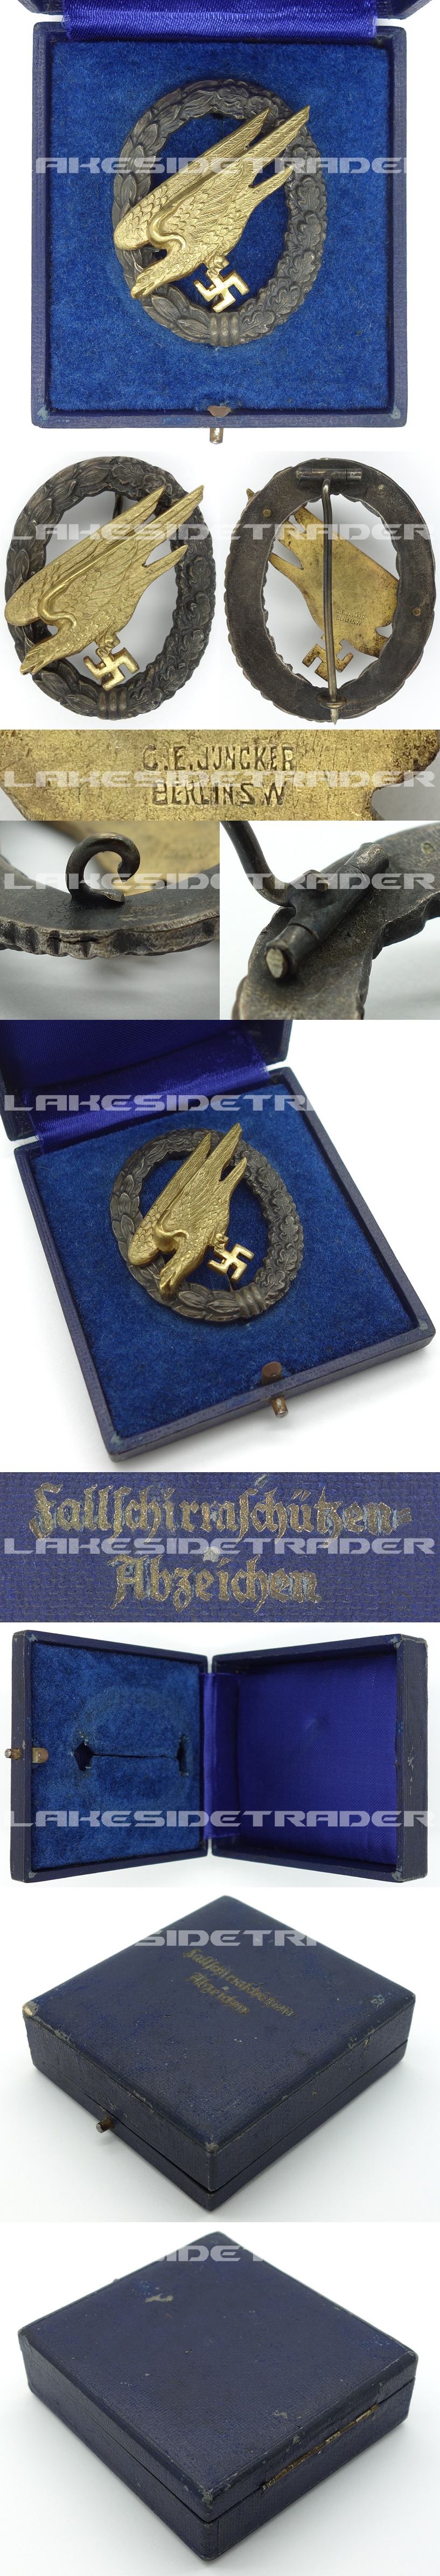 Cased Luftwaffe Paratrooper Badge by Juncker